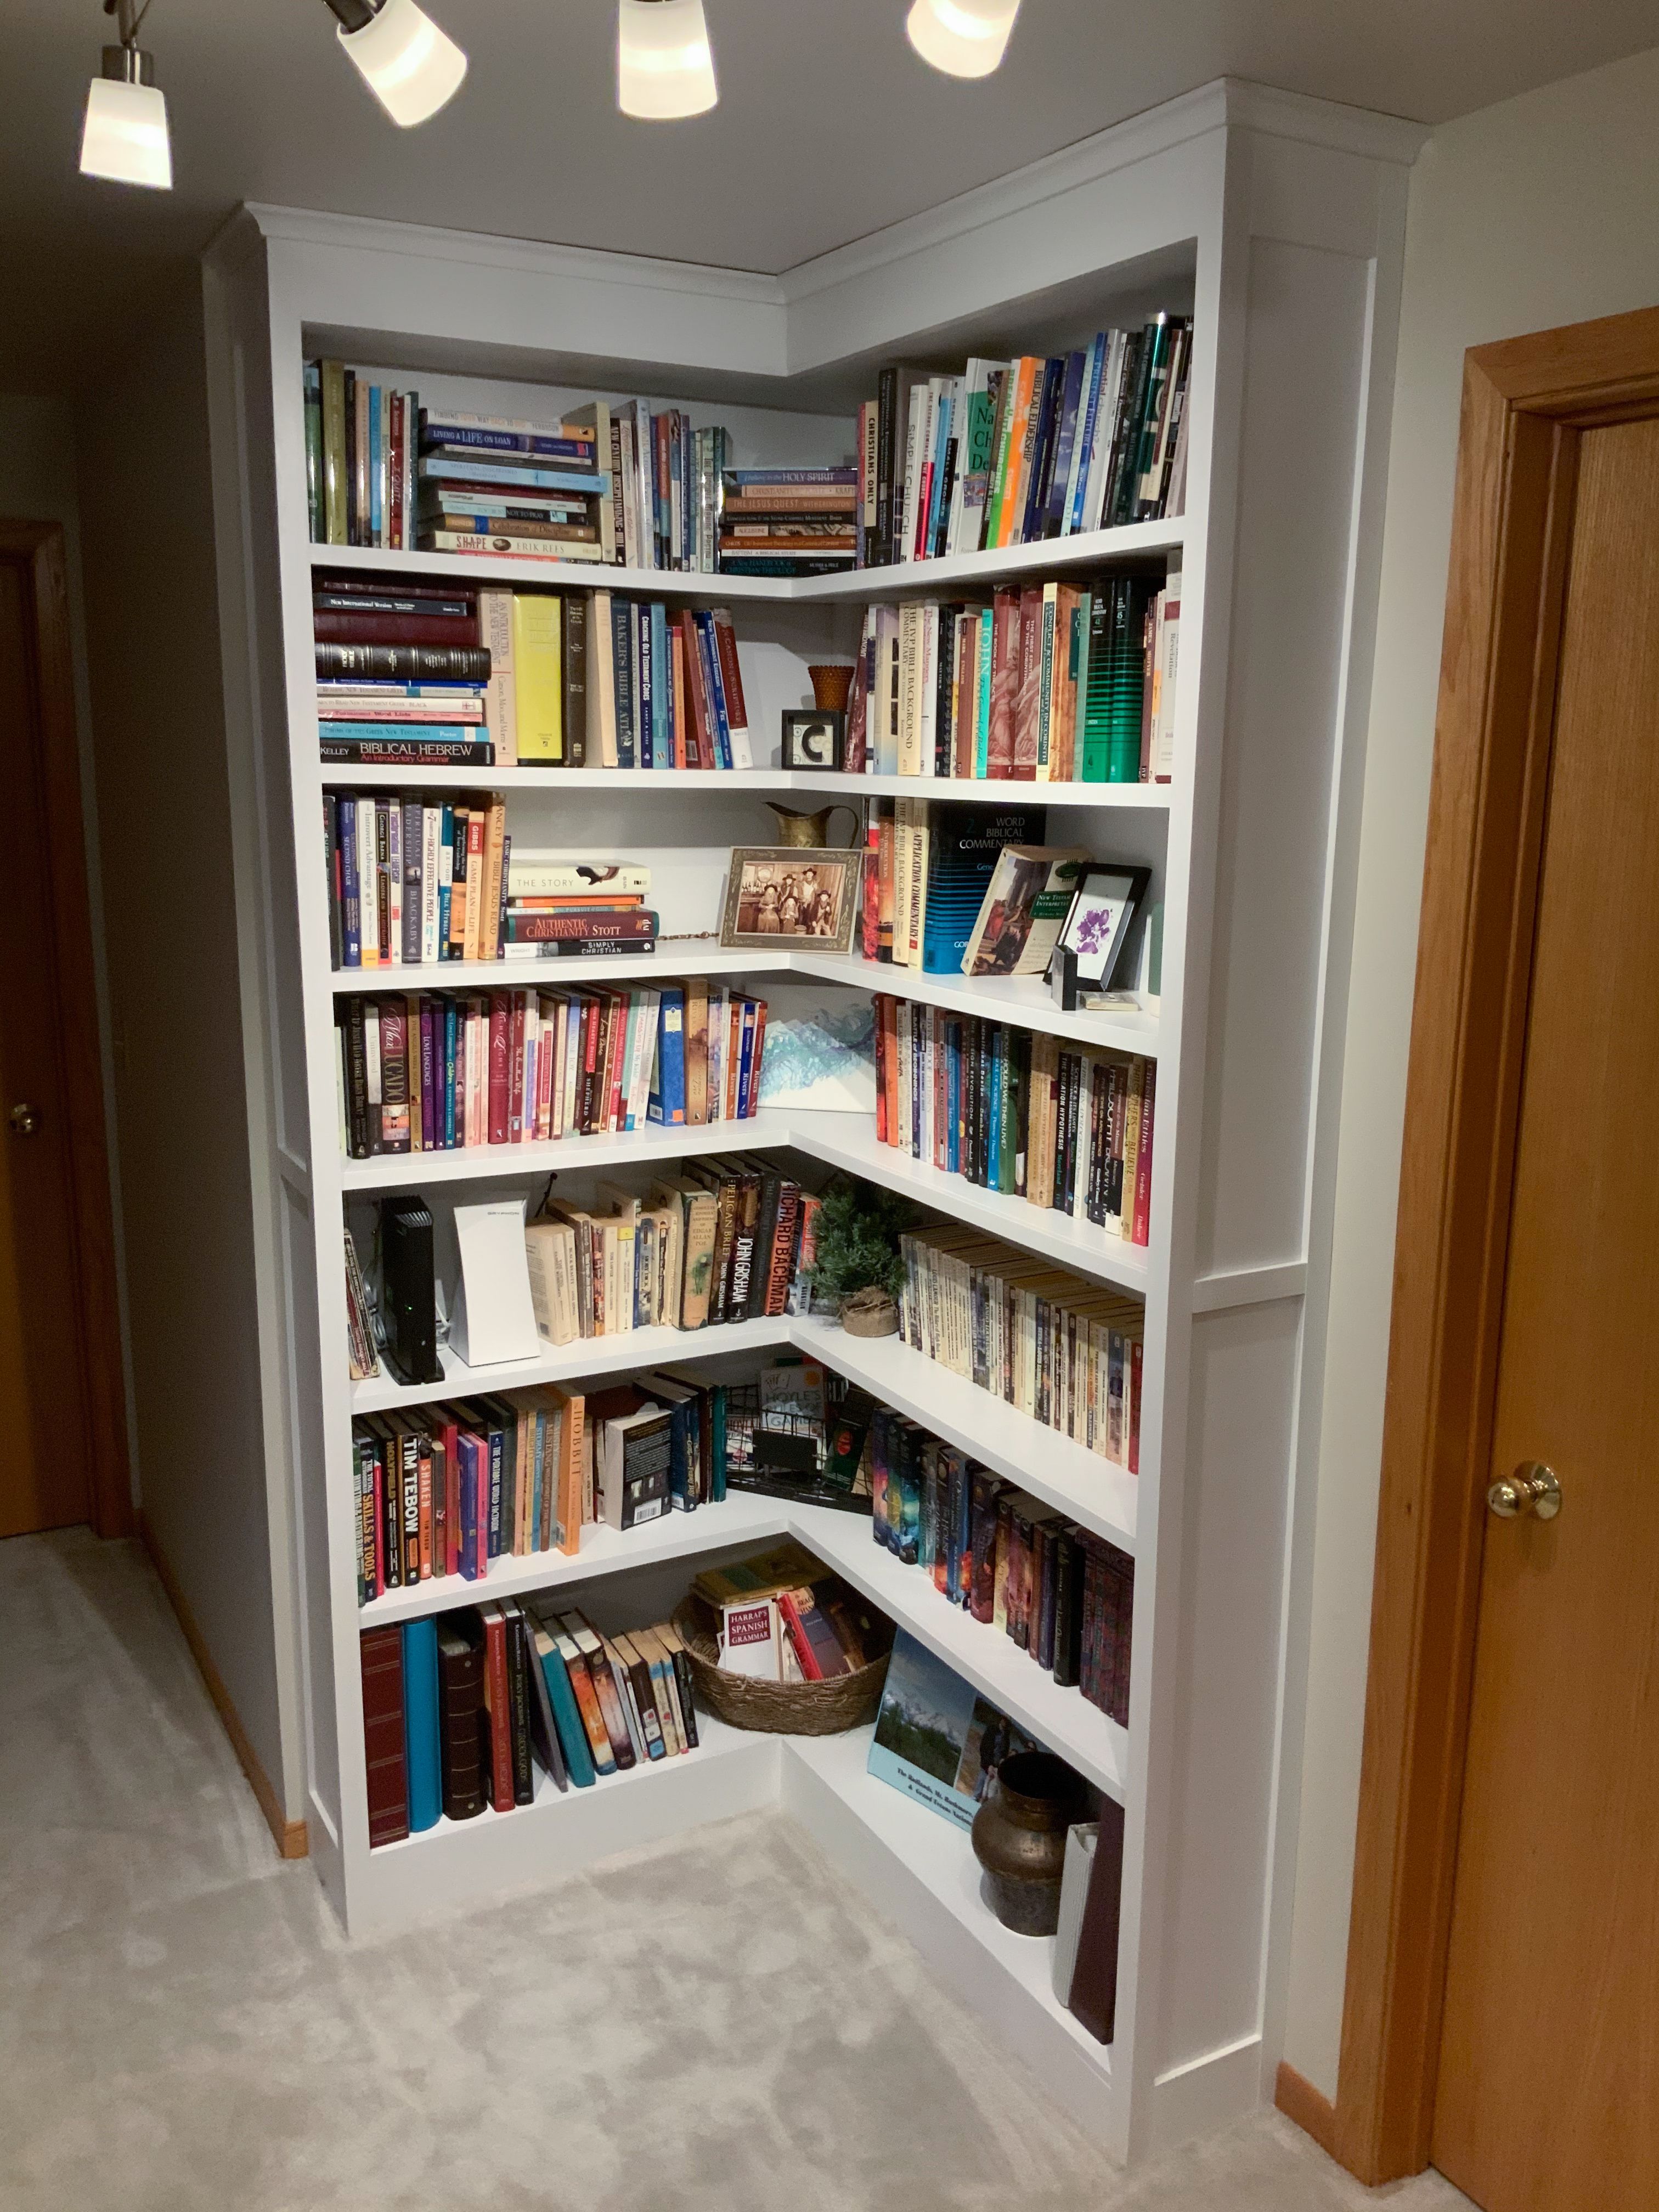 Built-in Corner Bookshelf with Open Corner - Built-in Corner Bookshelf with Open Corner -   19 diy Bookshelf corner ideas